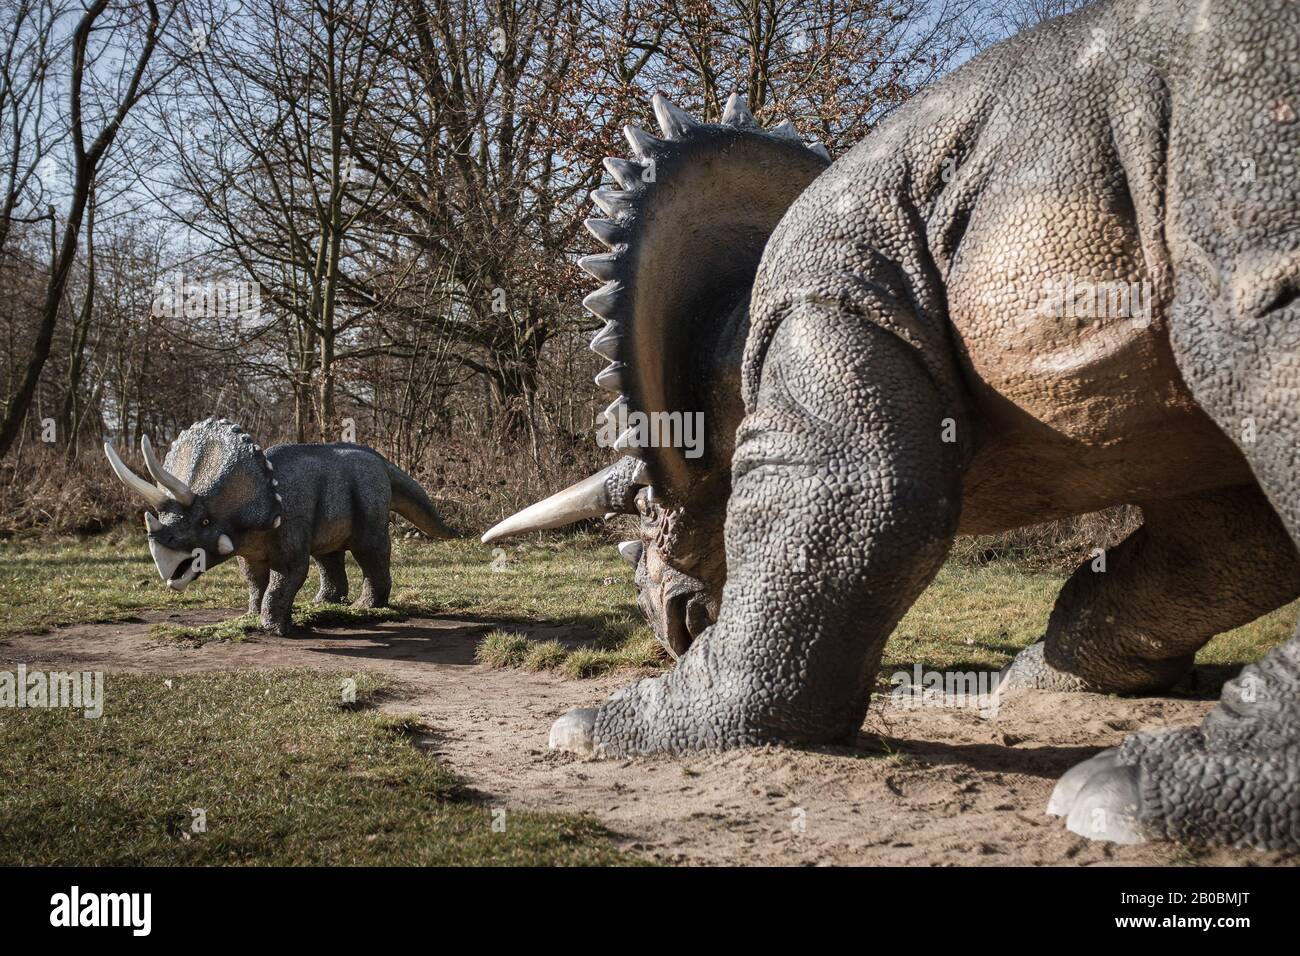 Lubin, POLEN - 8. FEBRUAR 2020 - Realistisches Modell der Dinosaurier-Trikeratops im Park Wroclawski. Park ist eine bekannte Touristenattraktion für Kinder in t Stockfoto